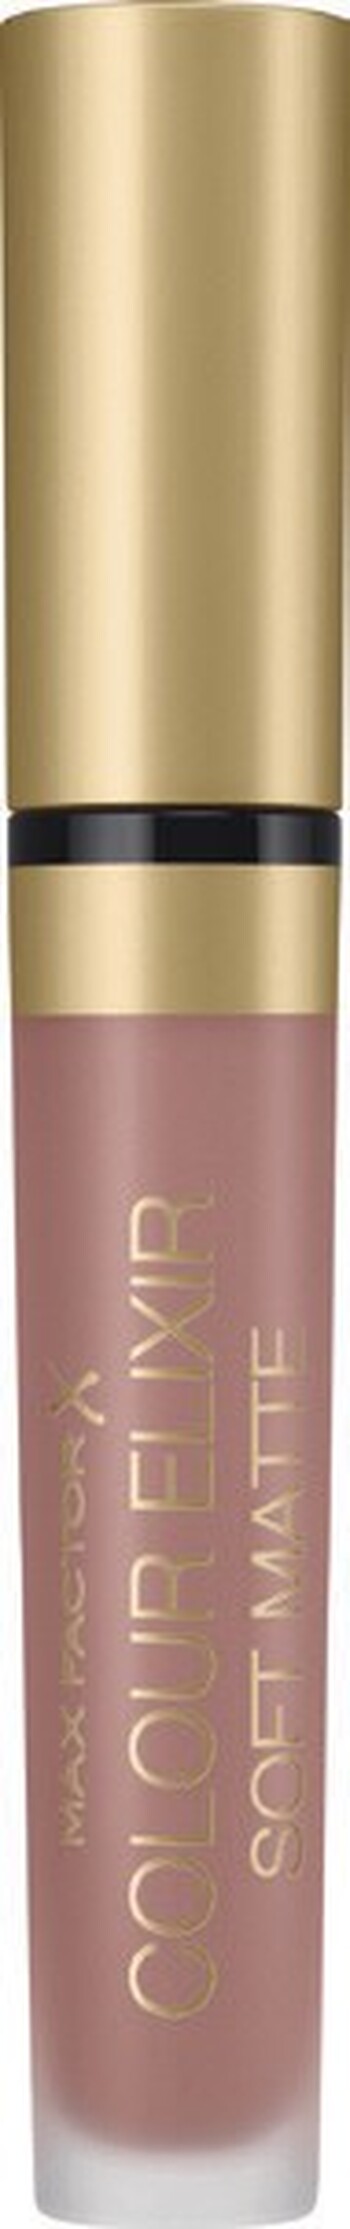 Max Factor Colour Elixir Soft Matte Liquid Lipstick - Light Brown